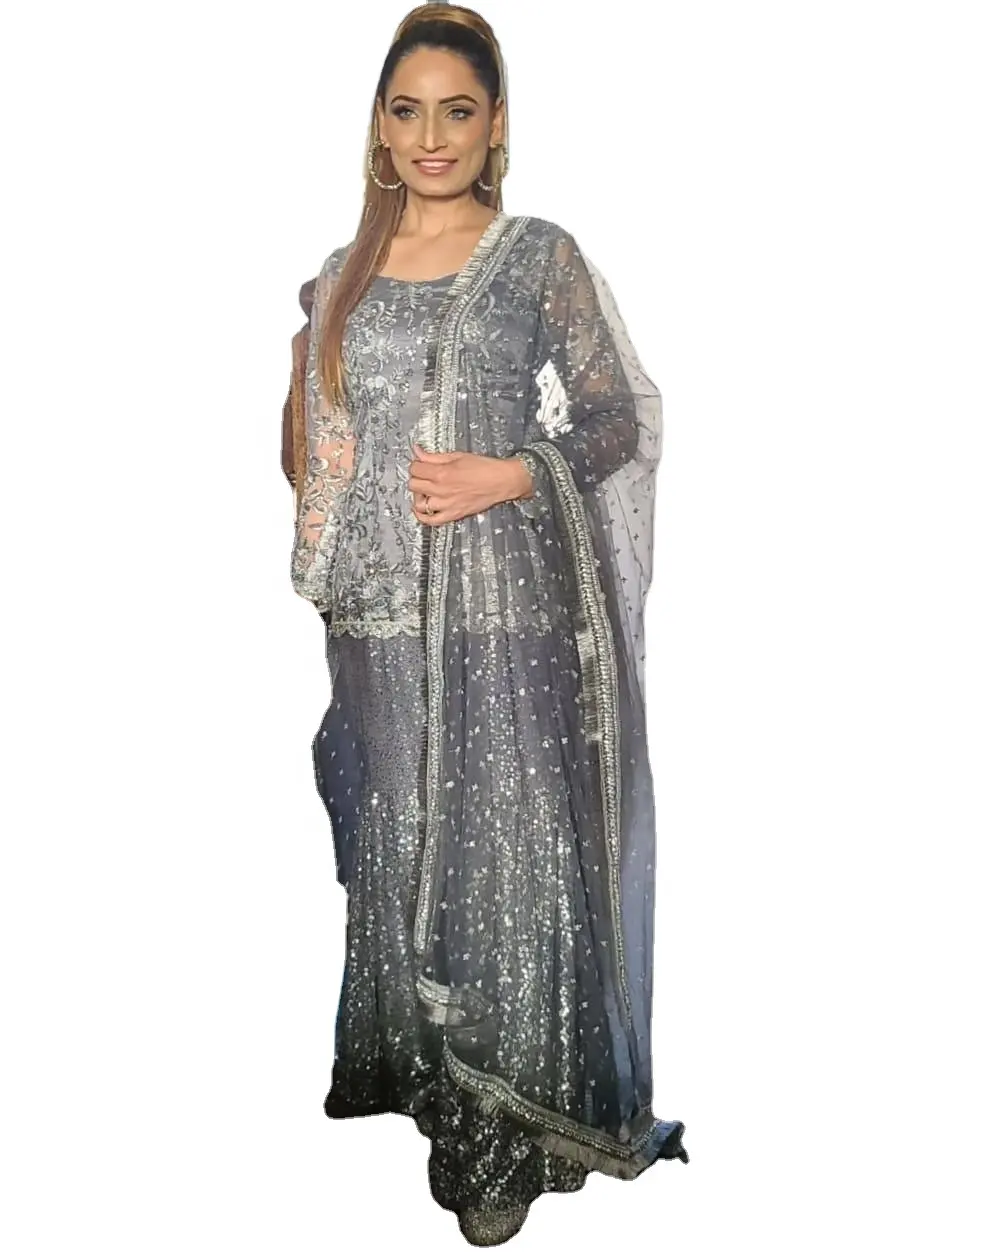 Fulpari etnik giyim nakış çalışması pakistan Salwar Kameez 1/3 çim koleksiyonu pakistan shalwar kameez suit